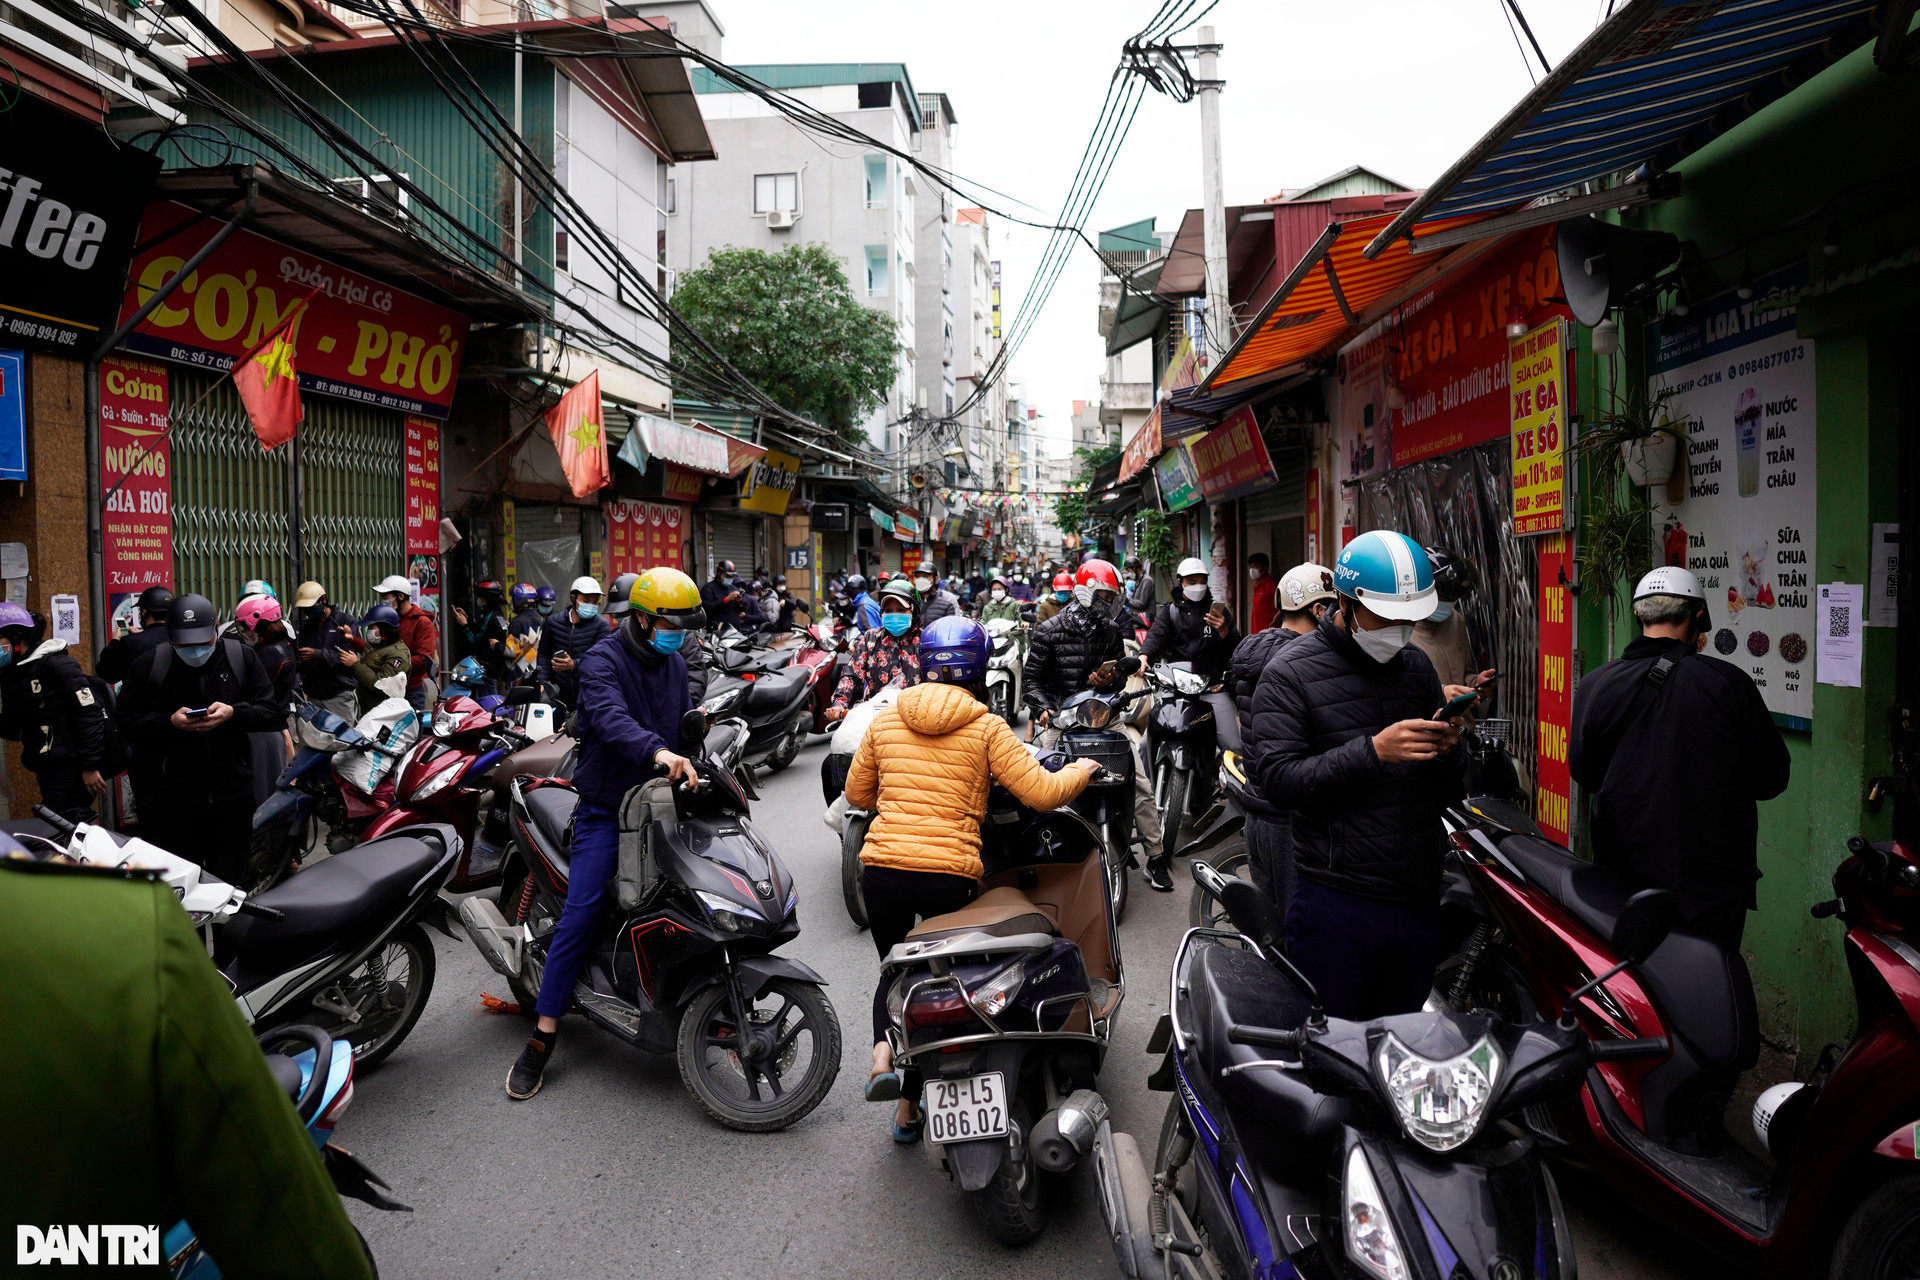 Hà Nội: Đông nghịt người quét QR Code tại ổ dịch Phú Đô - 4